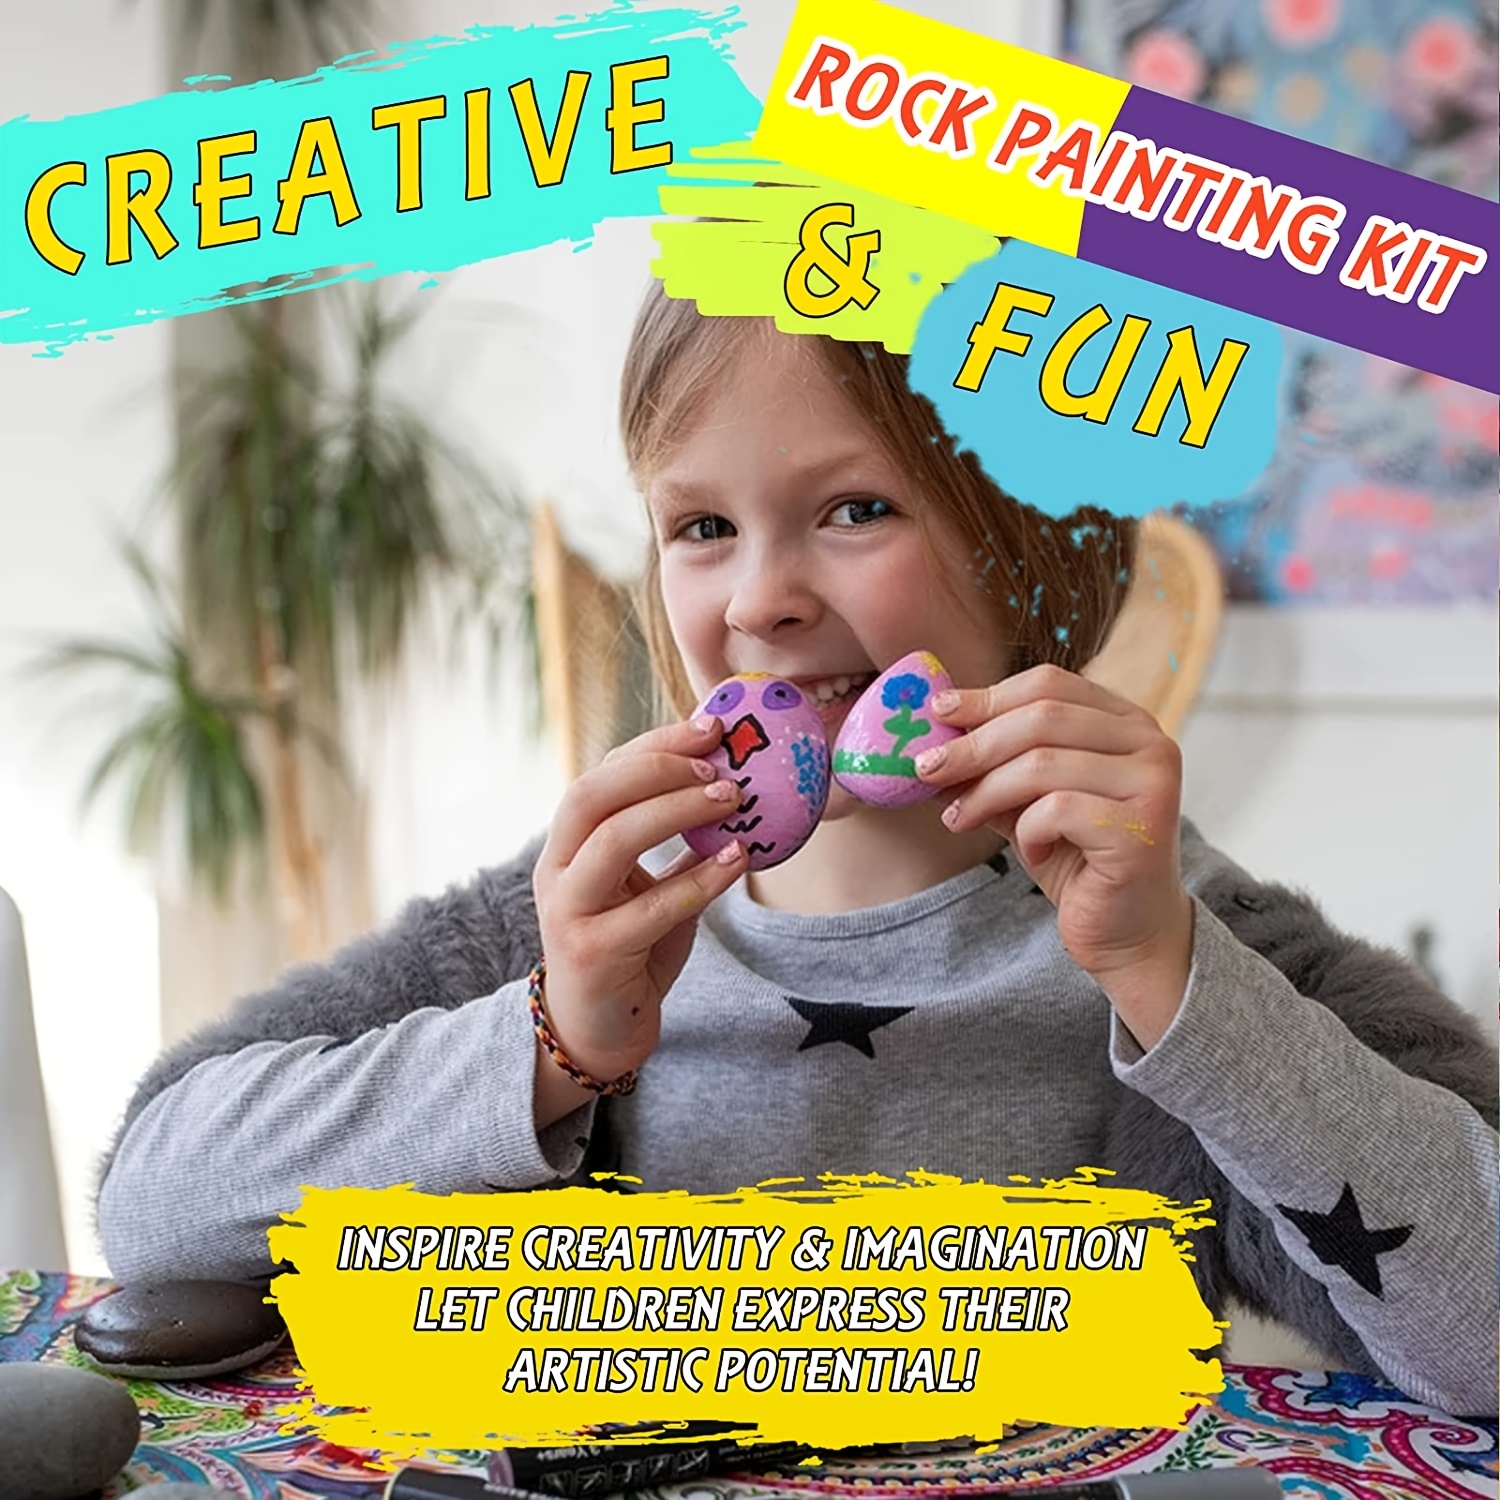  Kit de pintura de roca para niños, juego de pintura de color de  bricolaje de piedra, juguete de actividades de pintura creativa, regalo de  dibujo de artes y manualidades para niños